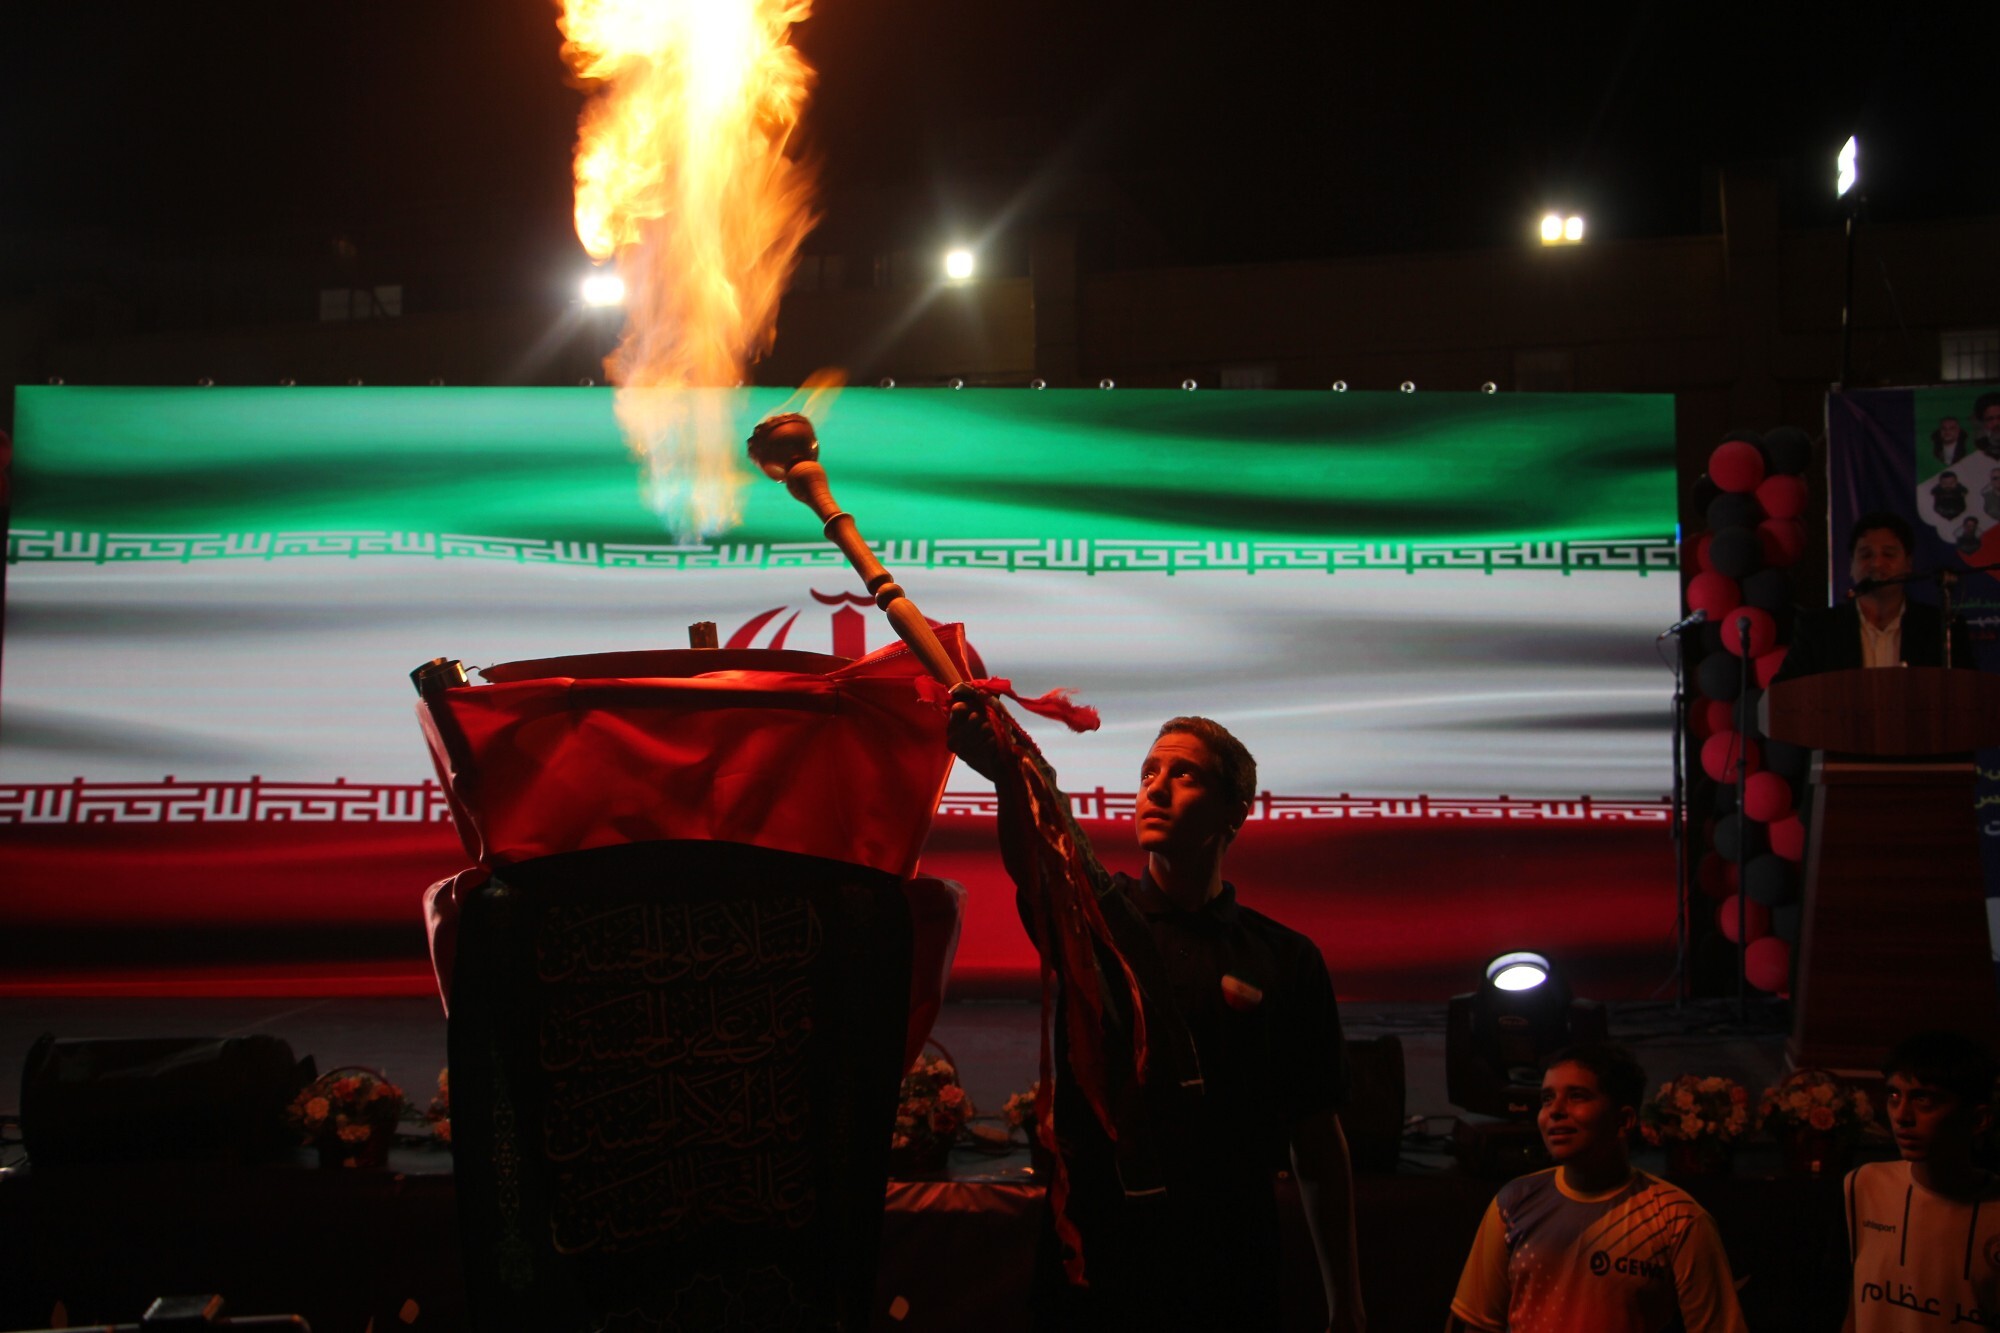 مشعل المپیک دانش آموزان دوره ابتدایی کشور در شیراز روشن شد